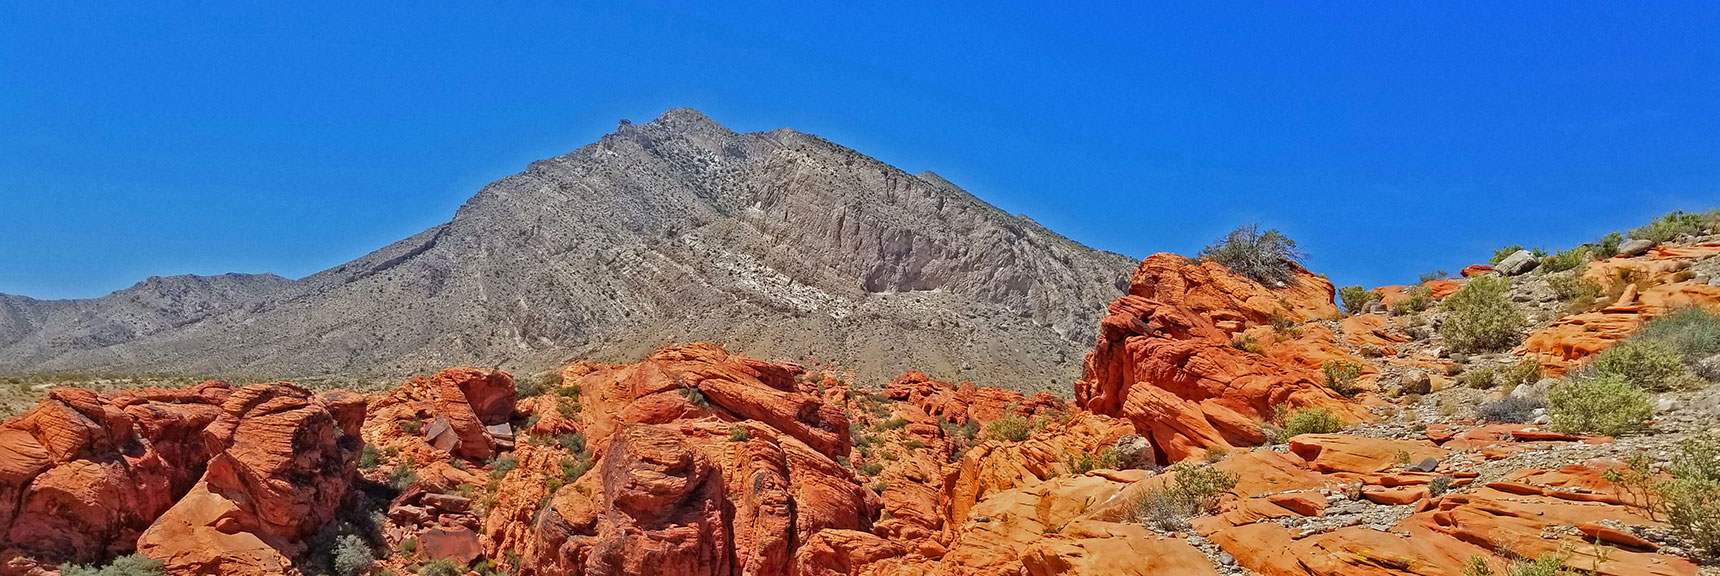 Looking Back Toward Damsel Peak | Little Red Rock Las Vegas, Nevada, Near La Madre Mountains Wilderness